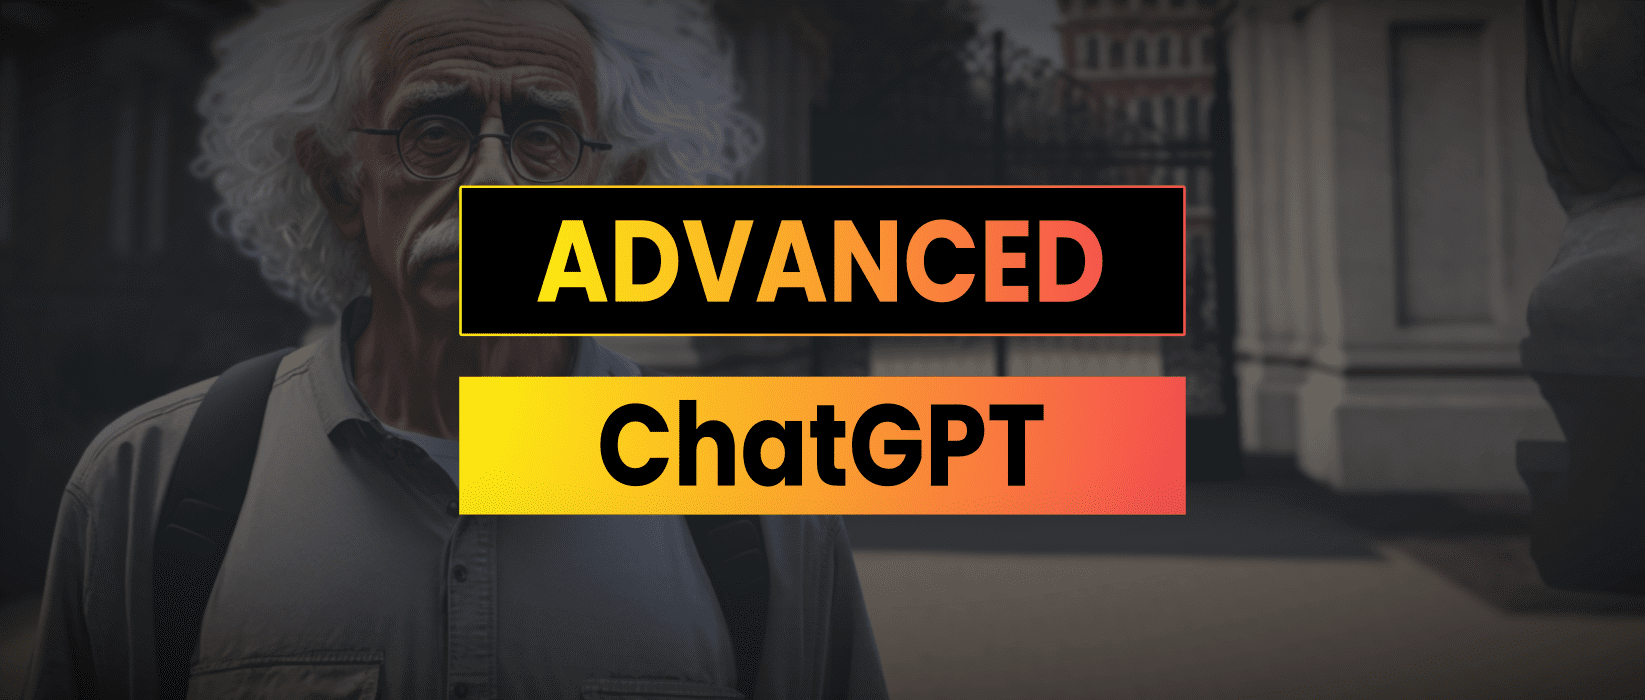 Advanced ChatGPT